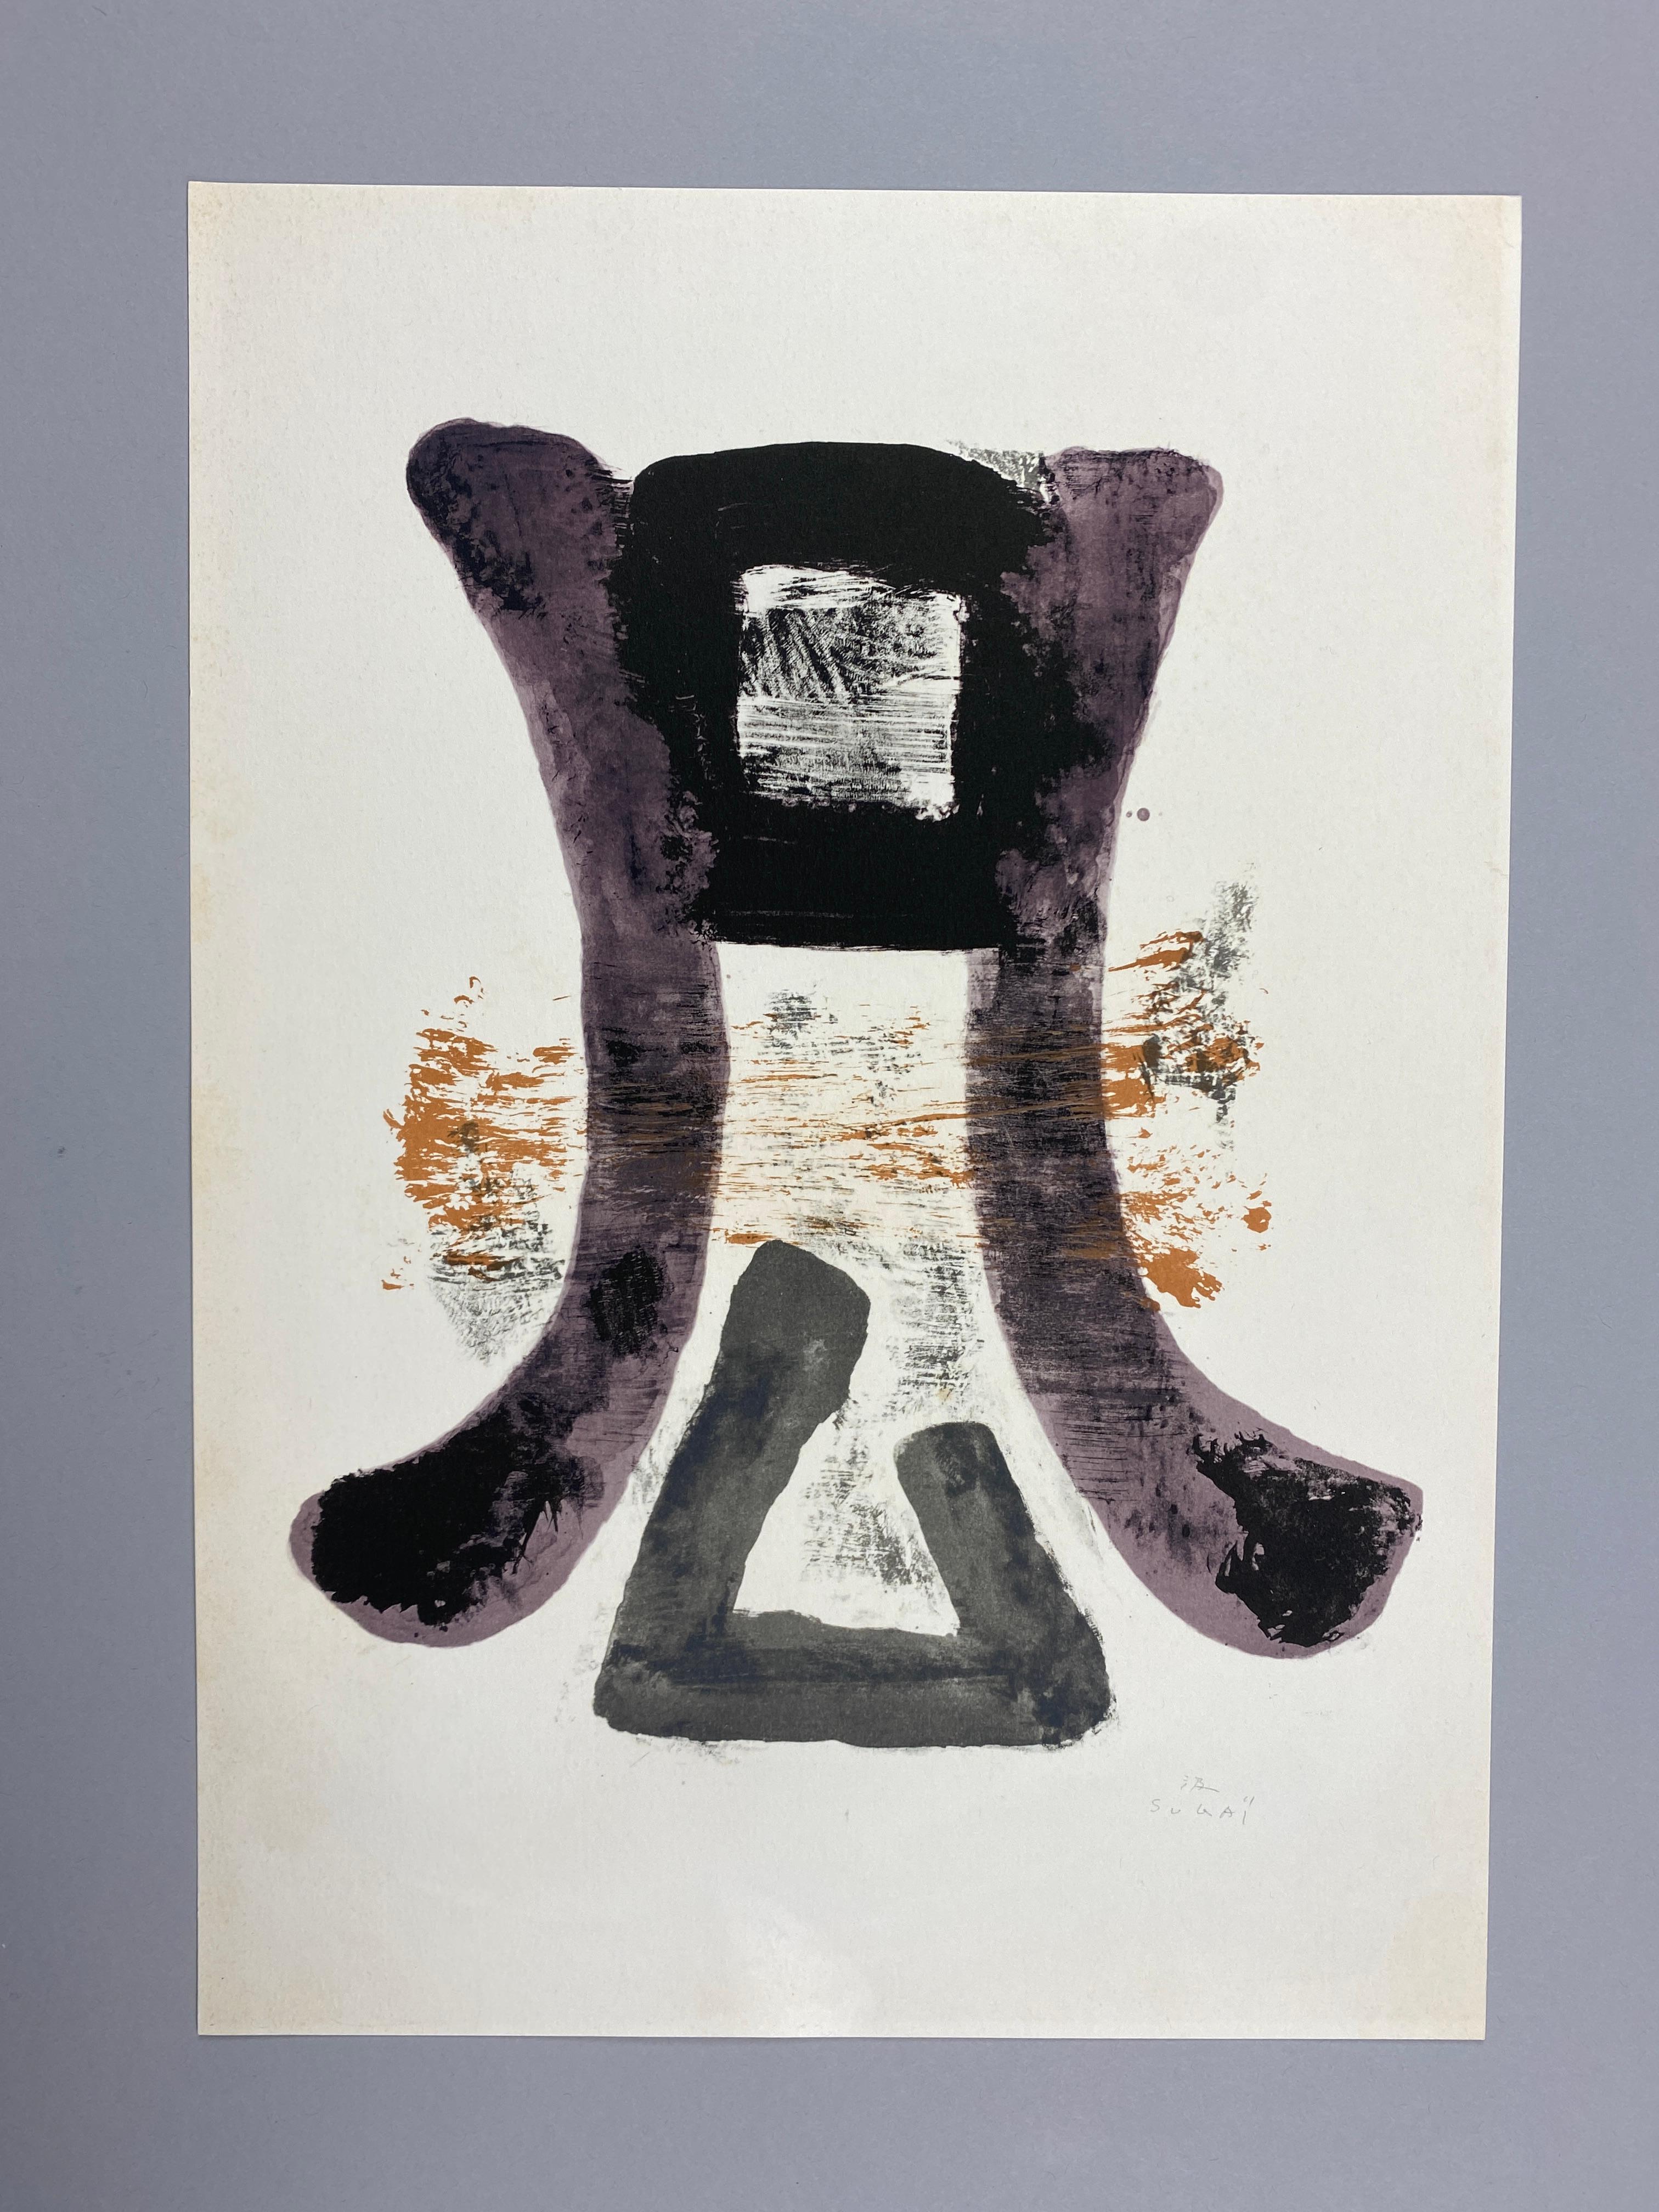 Kumi Sugaï, einer der international renommiertesten japanischen Maler des zwanzigsten Jahrhunderts.

Violett ' 1970 Lithographie von Kumi Sugaï in ausgezeichnetem Zustand. Die Lithografie ist nach dem Originalgemälde von 1959 entstanden. Das Werk